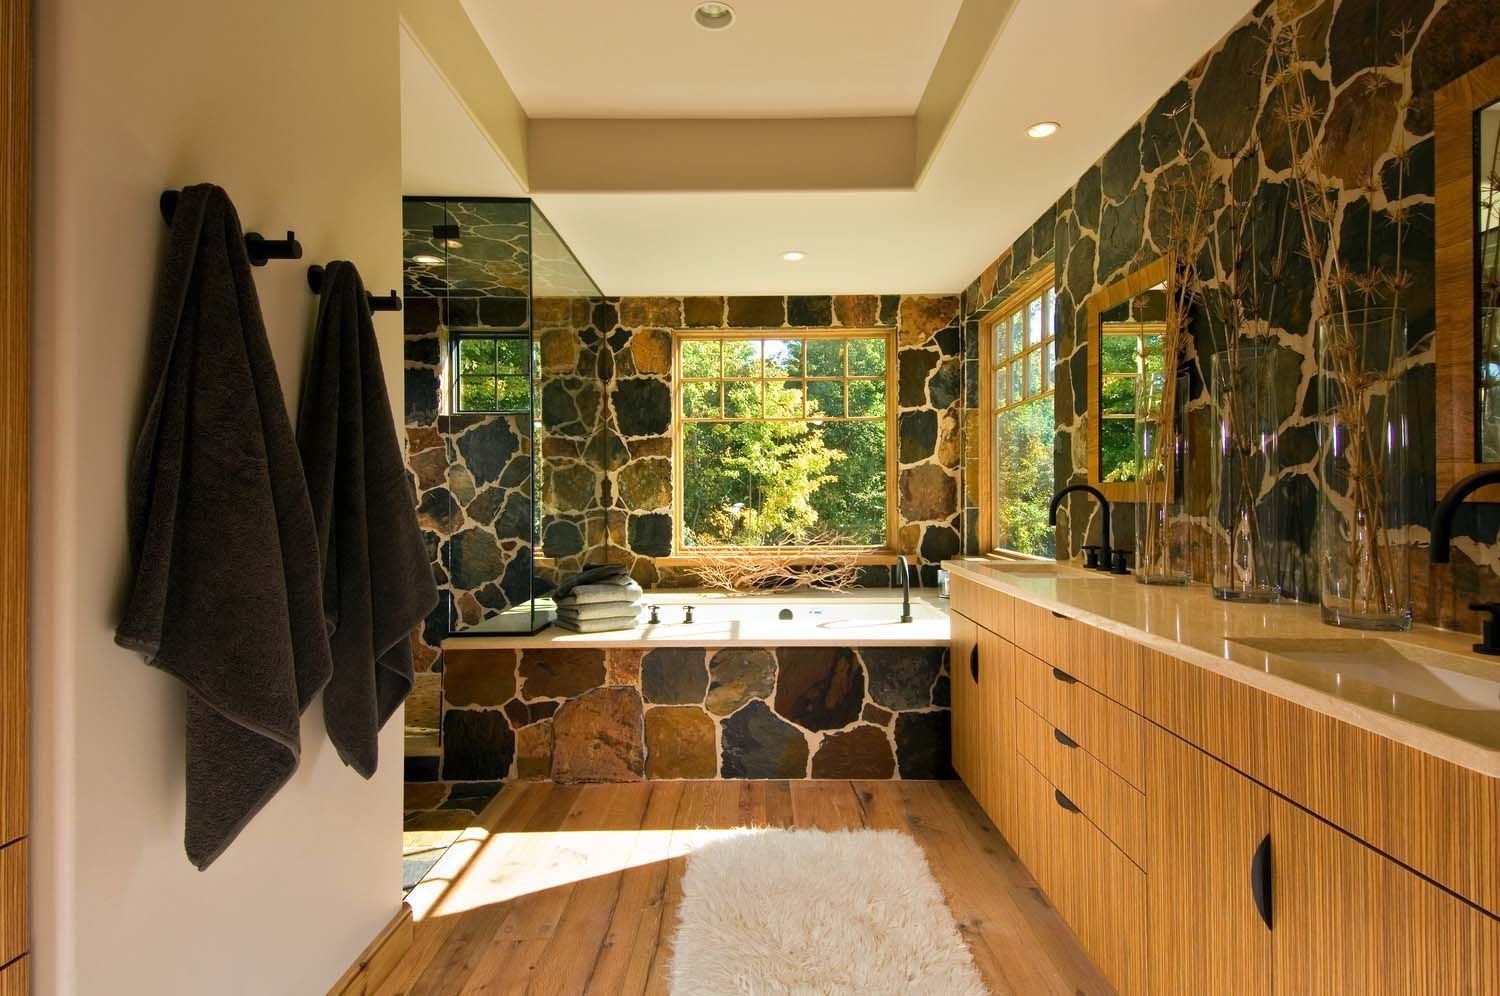 Stone room. Ванная отделка камнем. Отделка ванной комнаты натуральным камнем. Отделка камнем в интерьере. Натуральный камень в ванной.